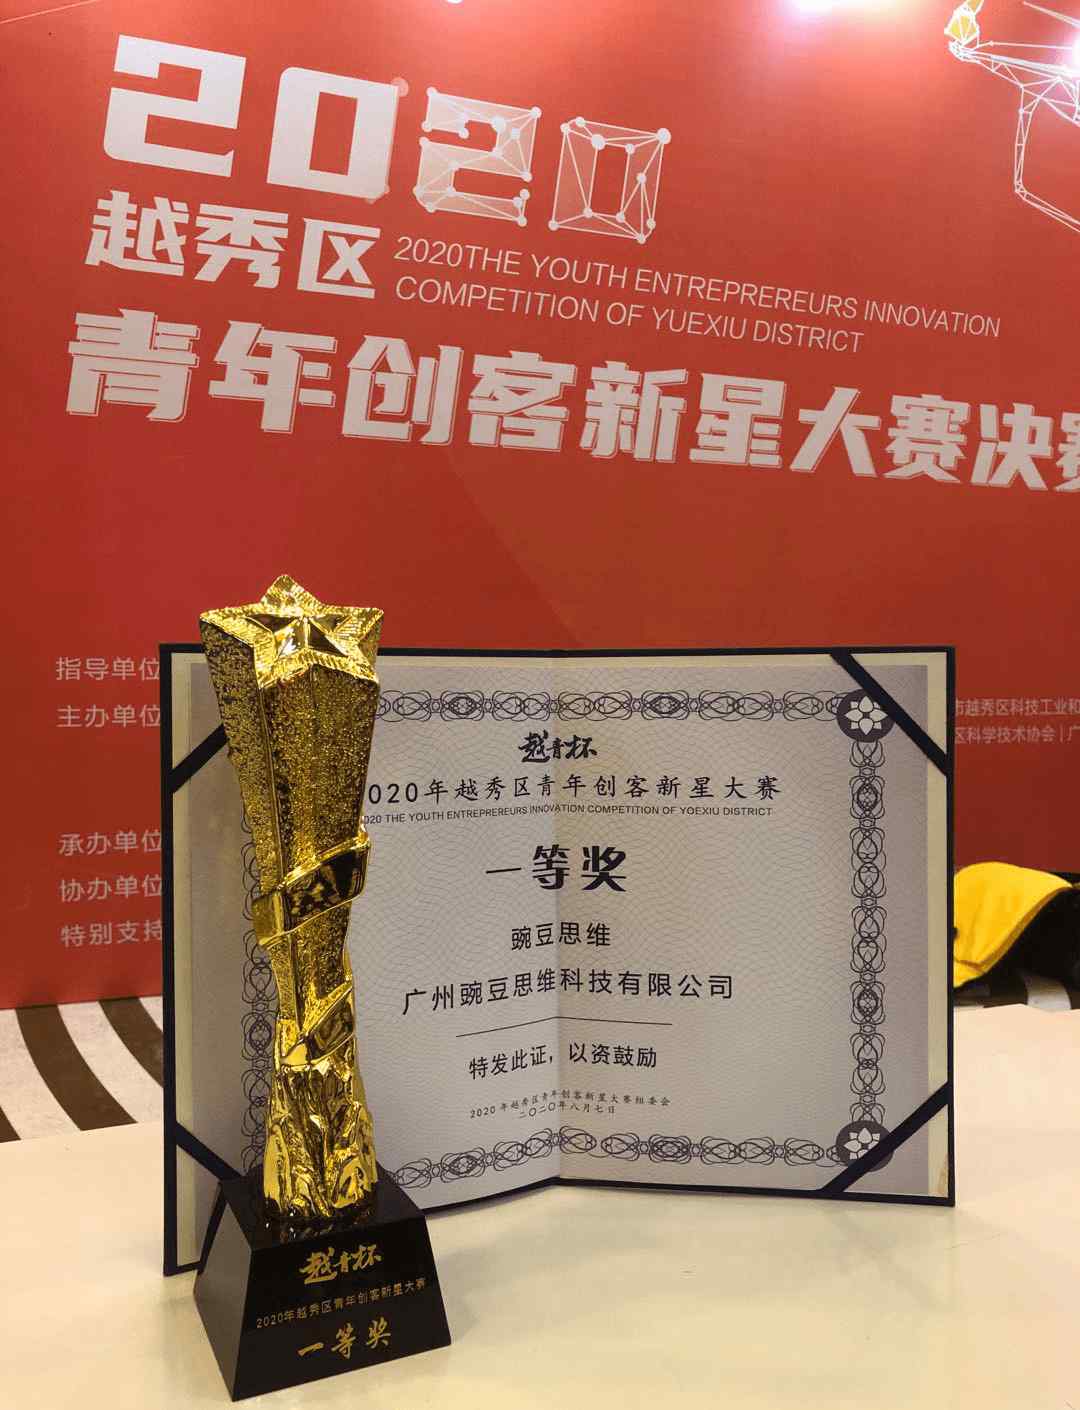 豌豆思维官网 豌豆思维荣获“越青杯”一等奖 为本次大赛唯一获奖互联网在线教育品牌